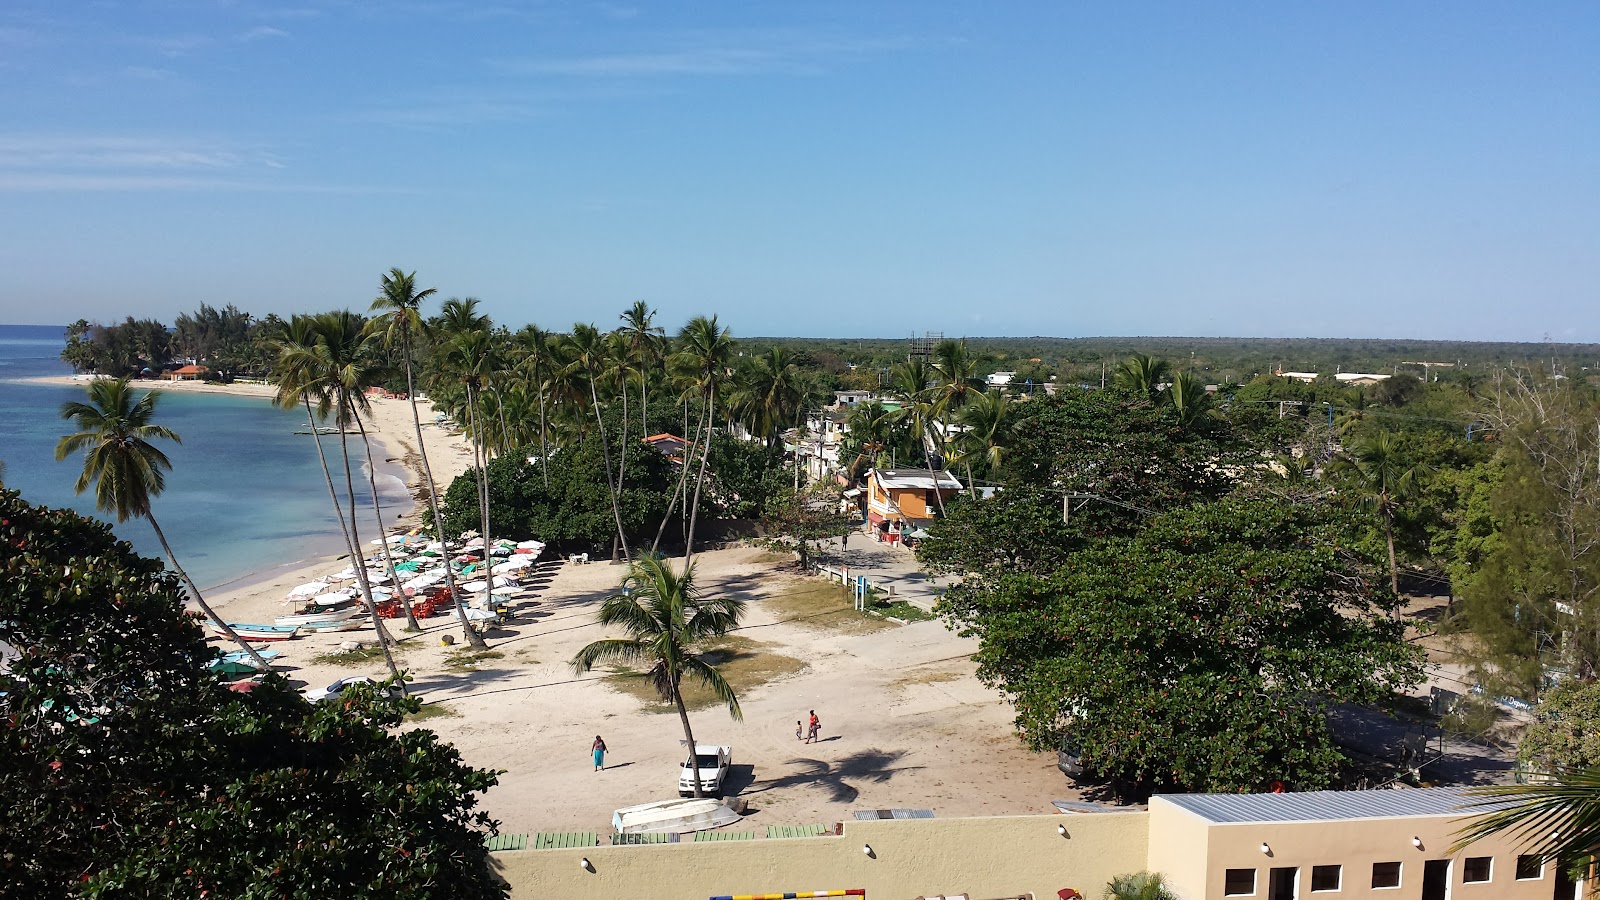 Guayacanes beach'in fotoğrafı kısmen temiz temizlik seviyesi ile